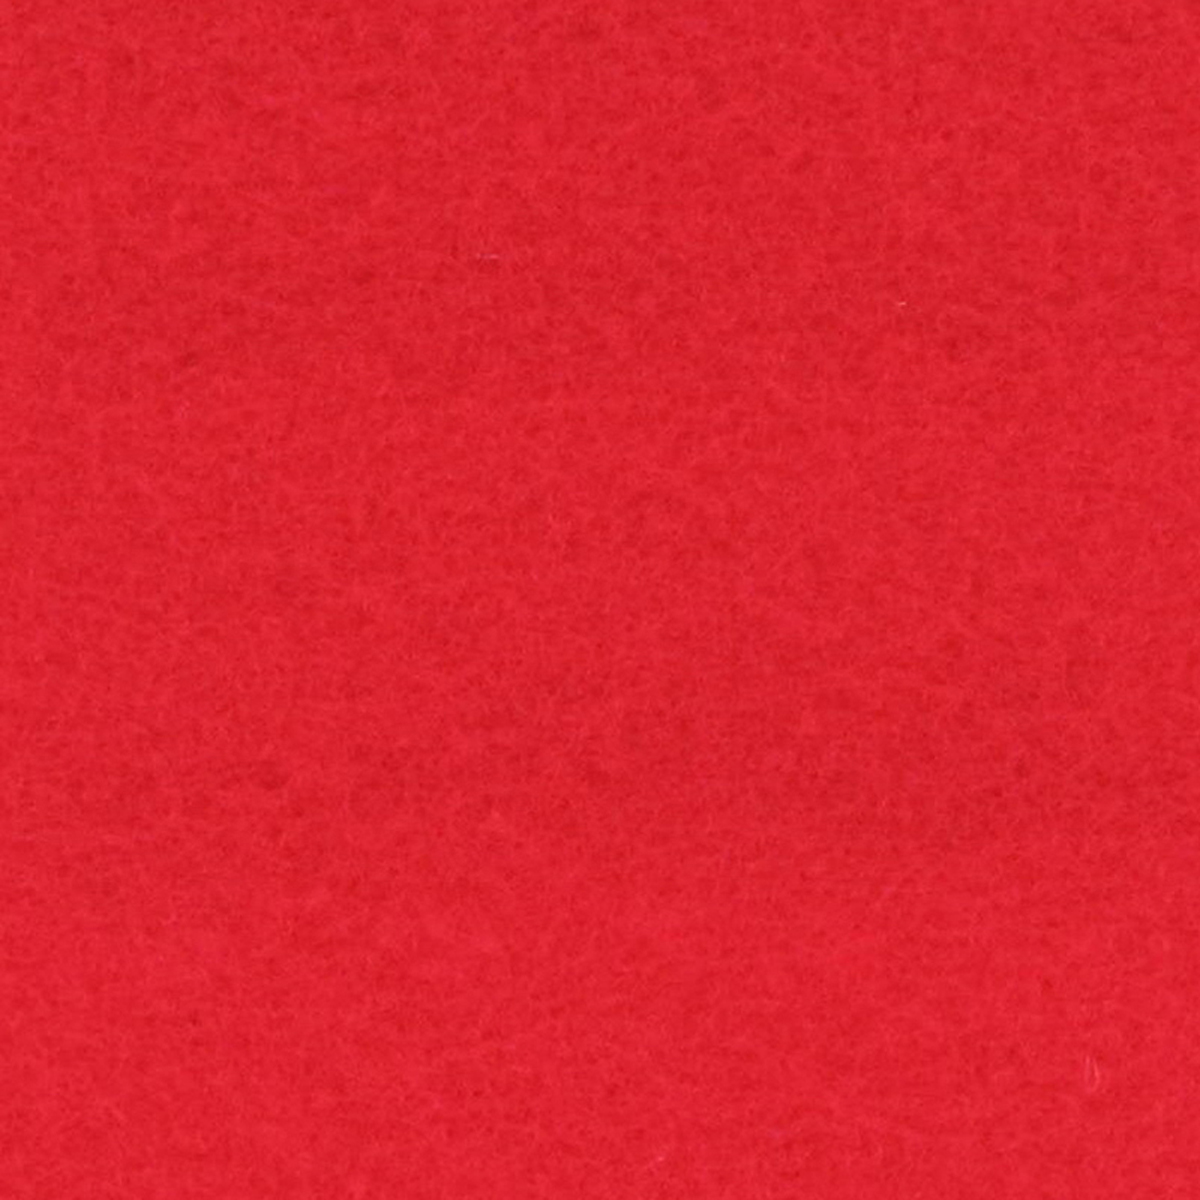 Classic carpet - Bright Red